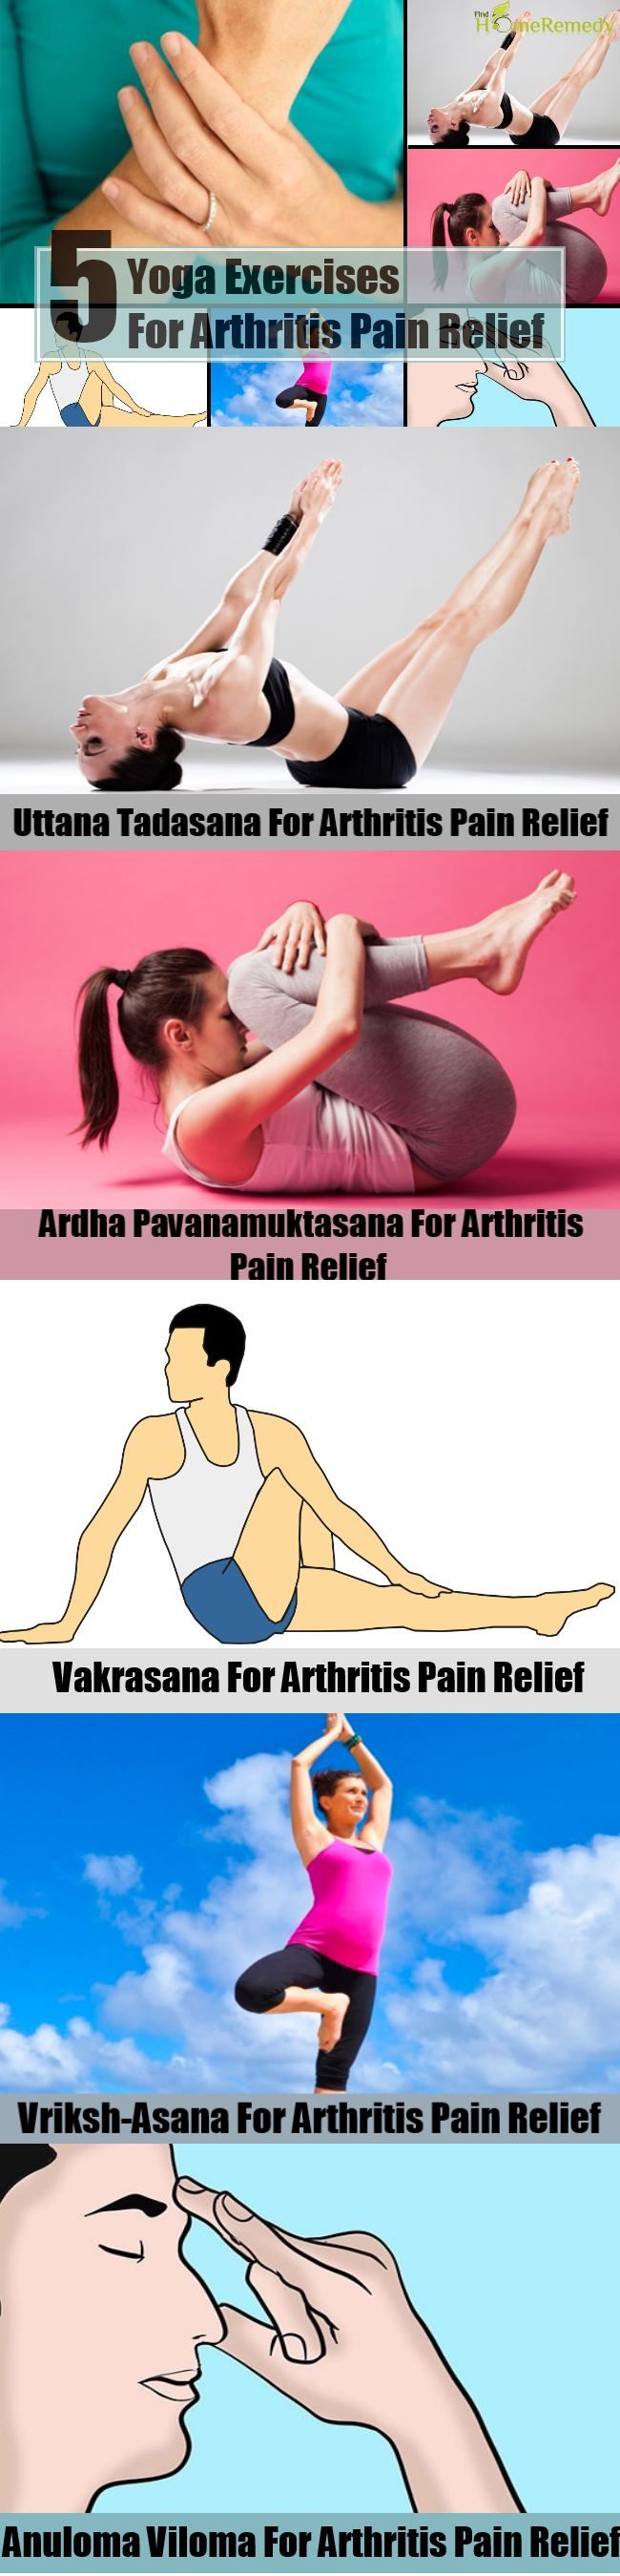 5 Exercices de yoga pour soulager les douleurs arthritiques